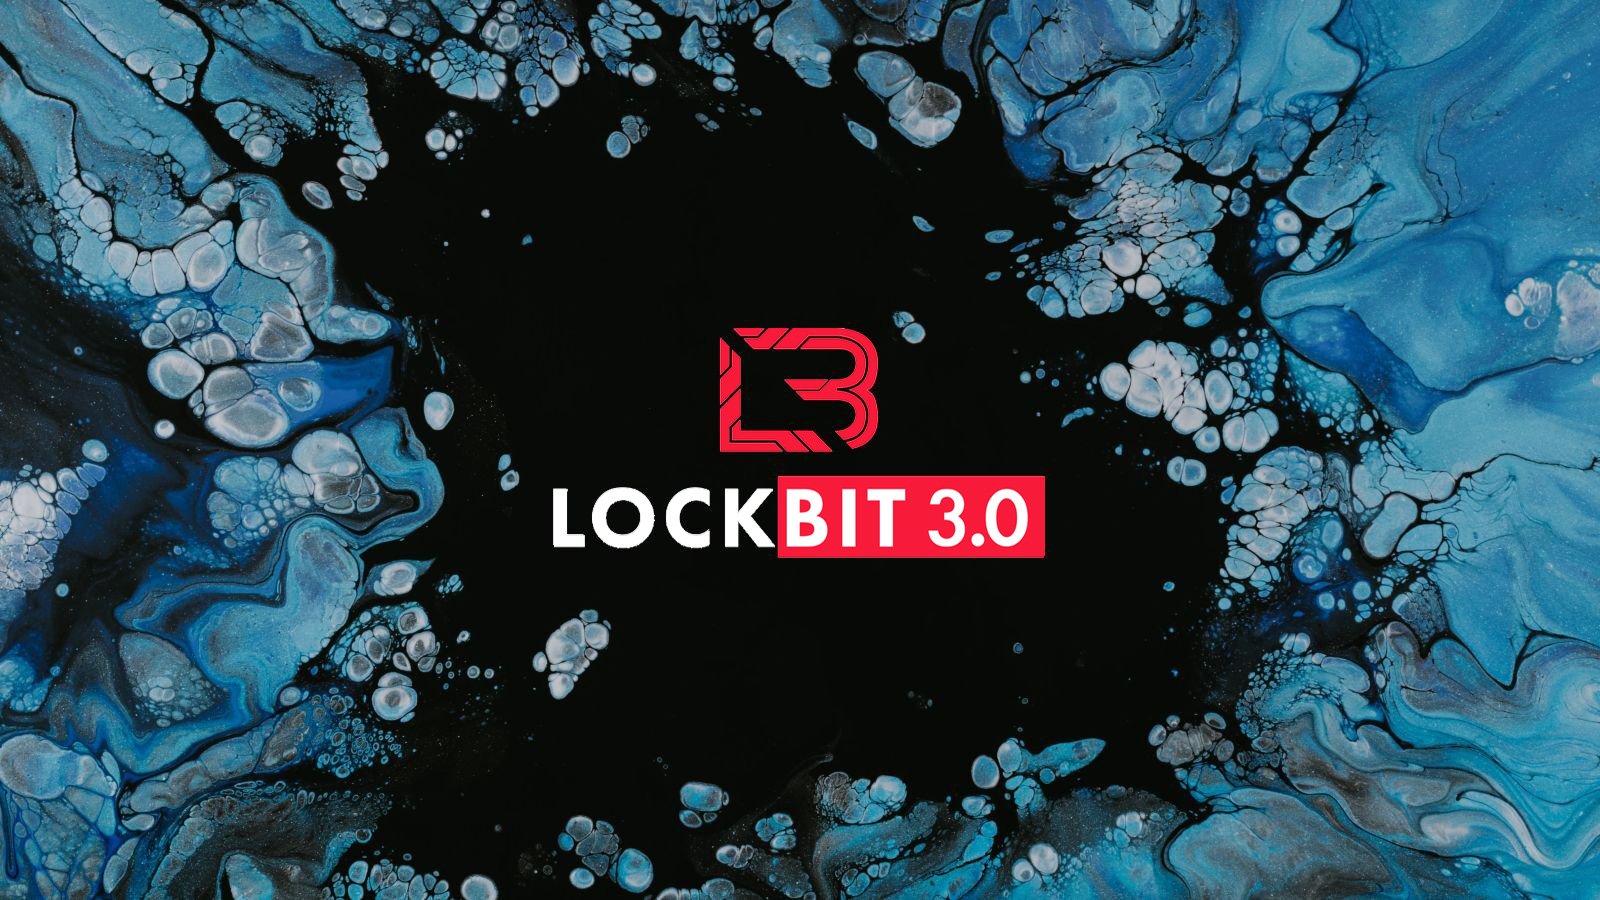 LockBit affiliate uses Amadey Bot malware to deploy ransomware